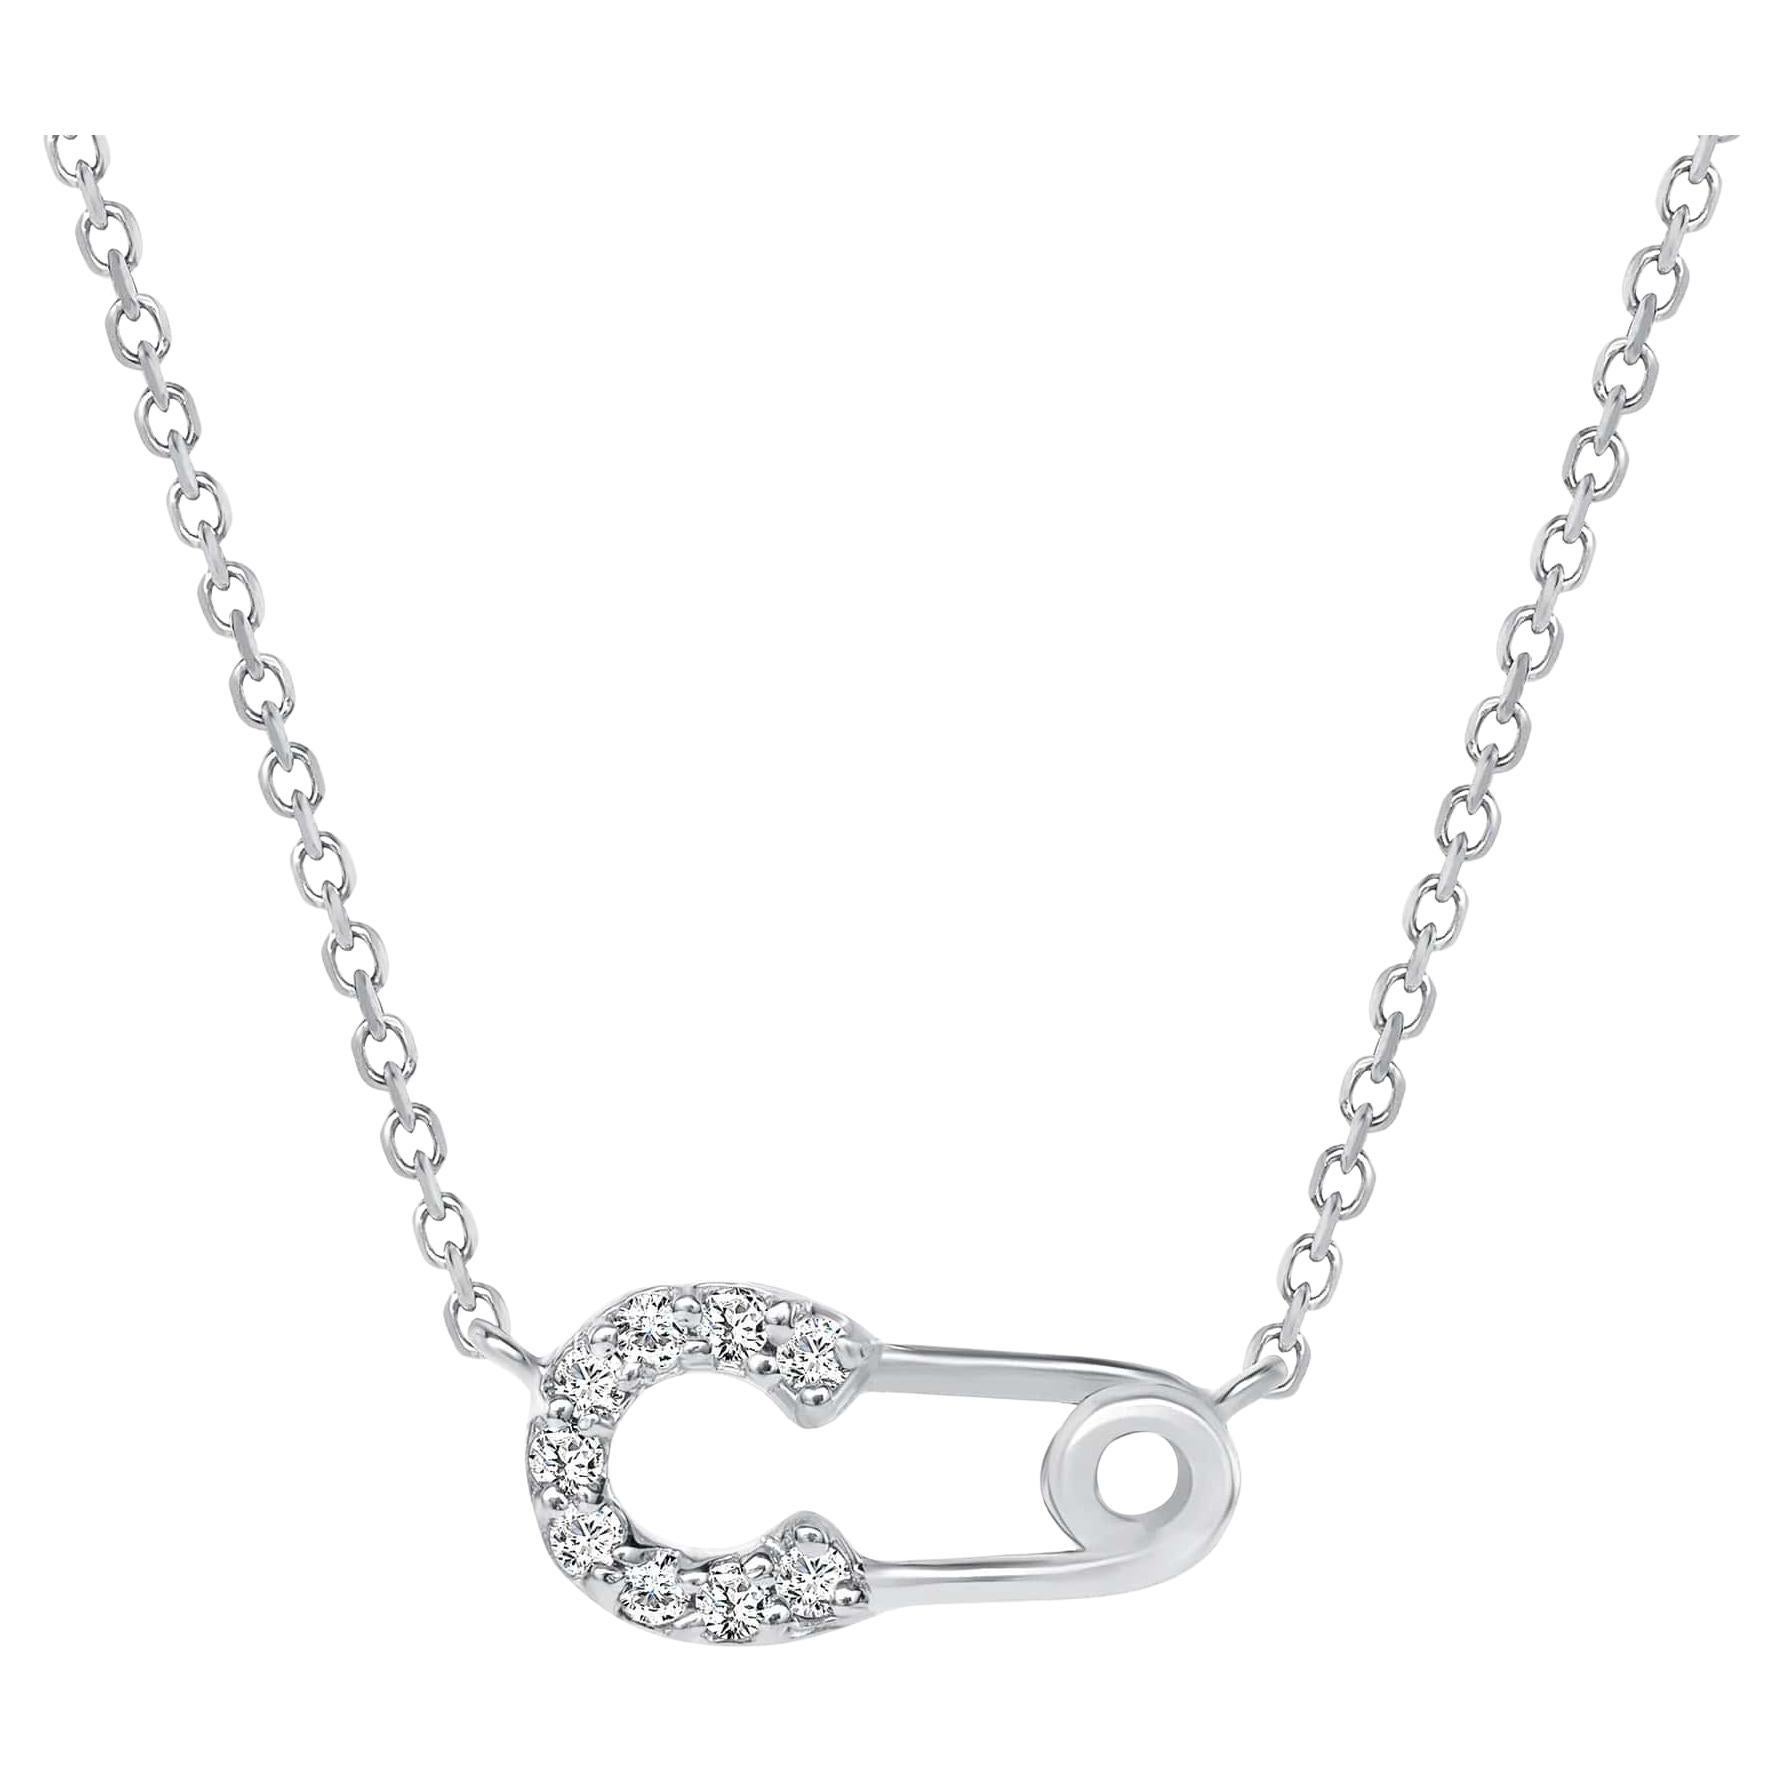 Eine schöne Diamant-Sicherheitsnadel-Anhänger-Halskette mit kleinen natürlichen Diamanten im Rundschliff in Pave-Fassung. Ein durchdachtes Geschenk für Jahrestag, Geburtstag, Abschluss, Valentinstag und Feiertage für jemanden, den Sie